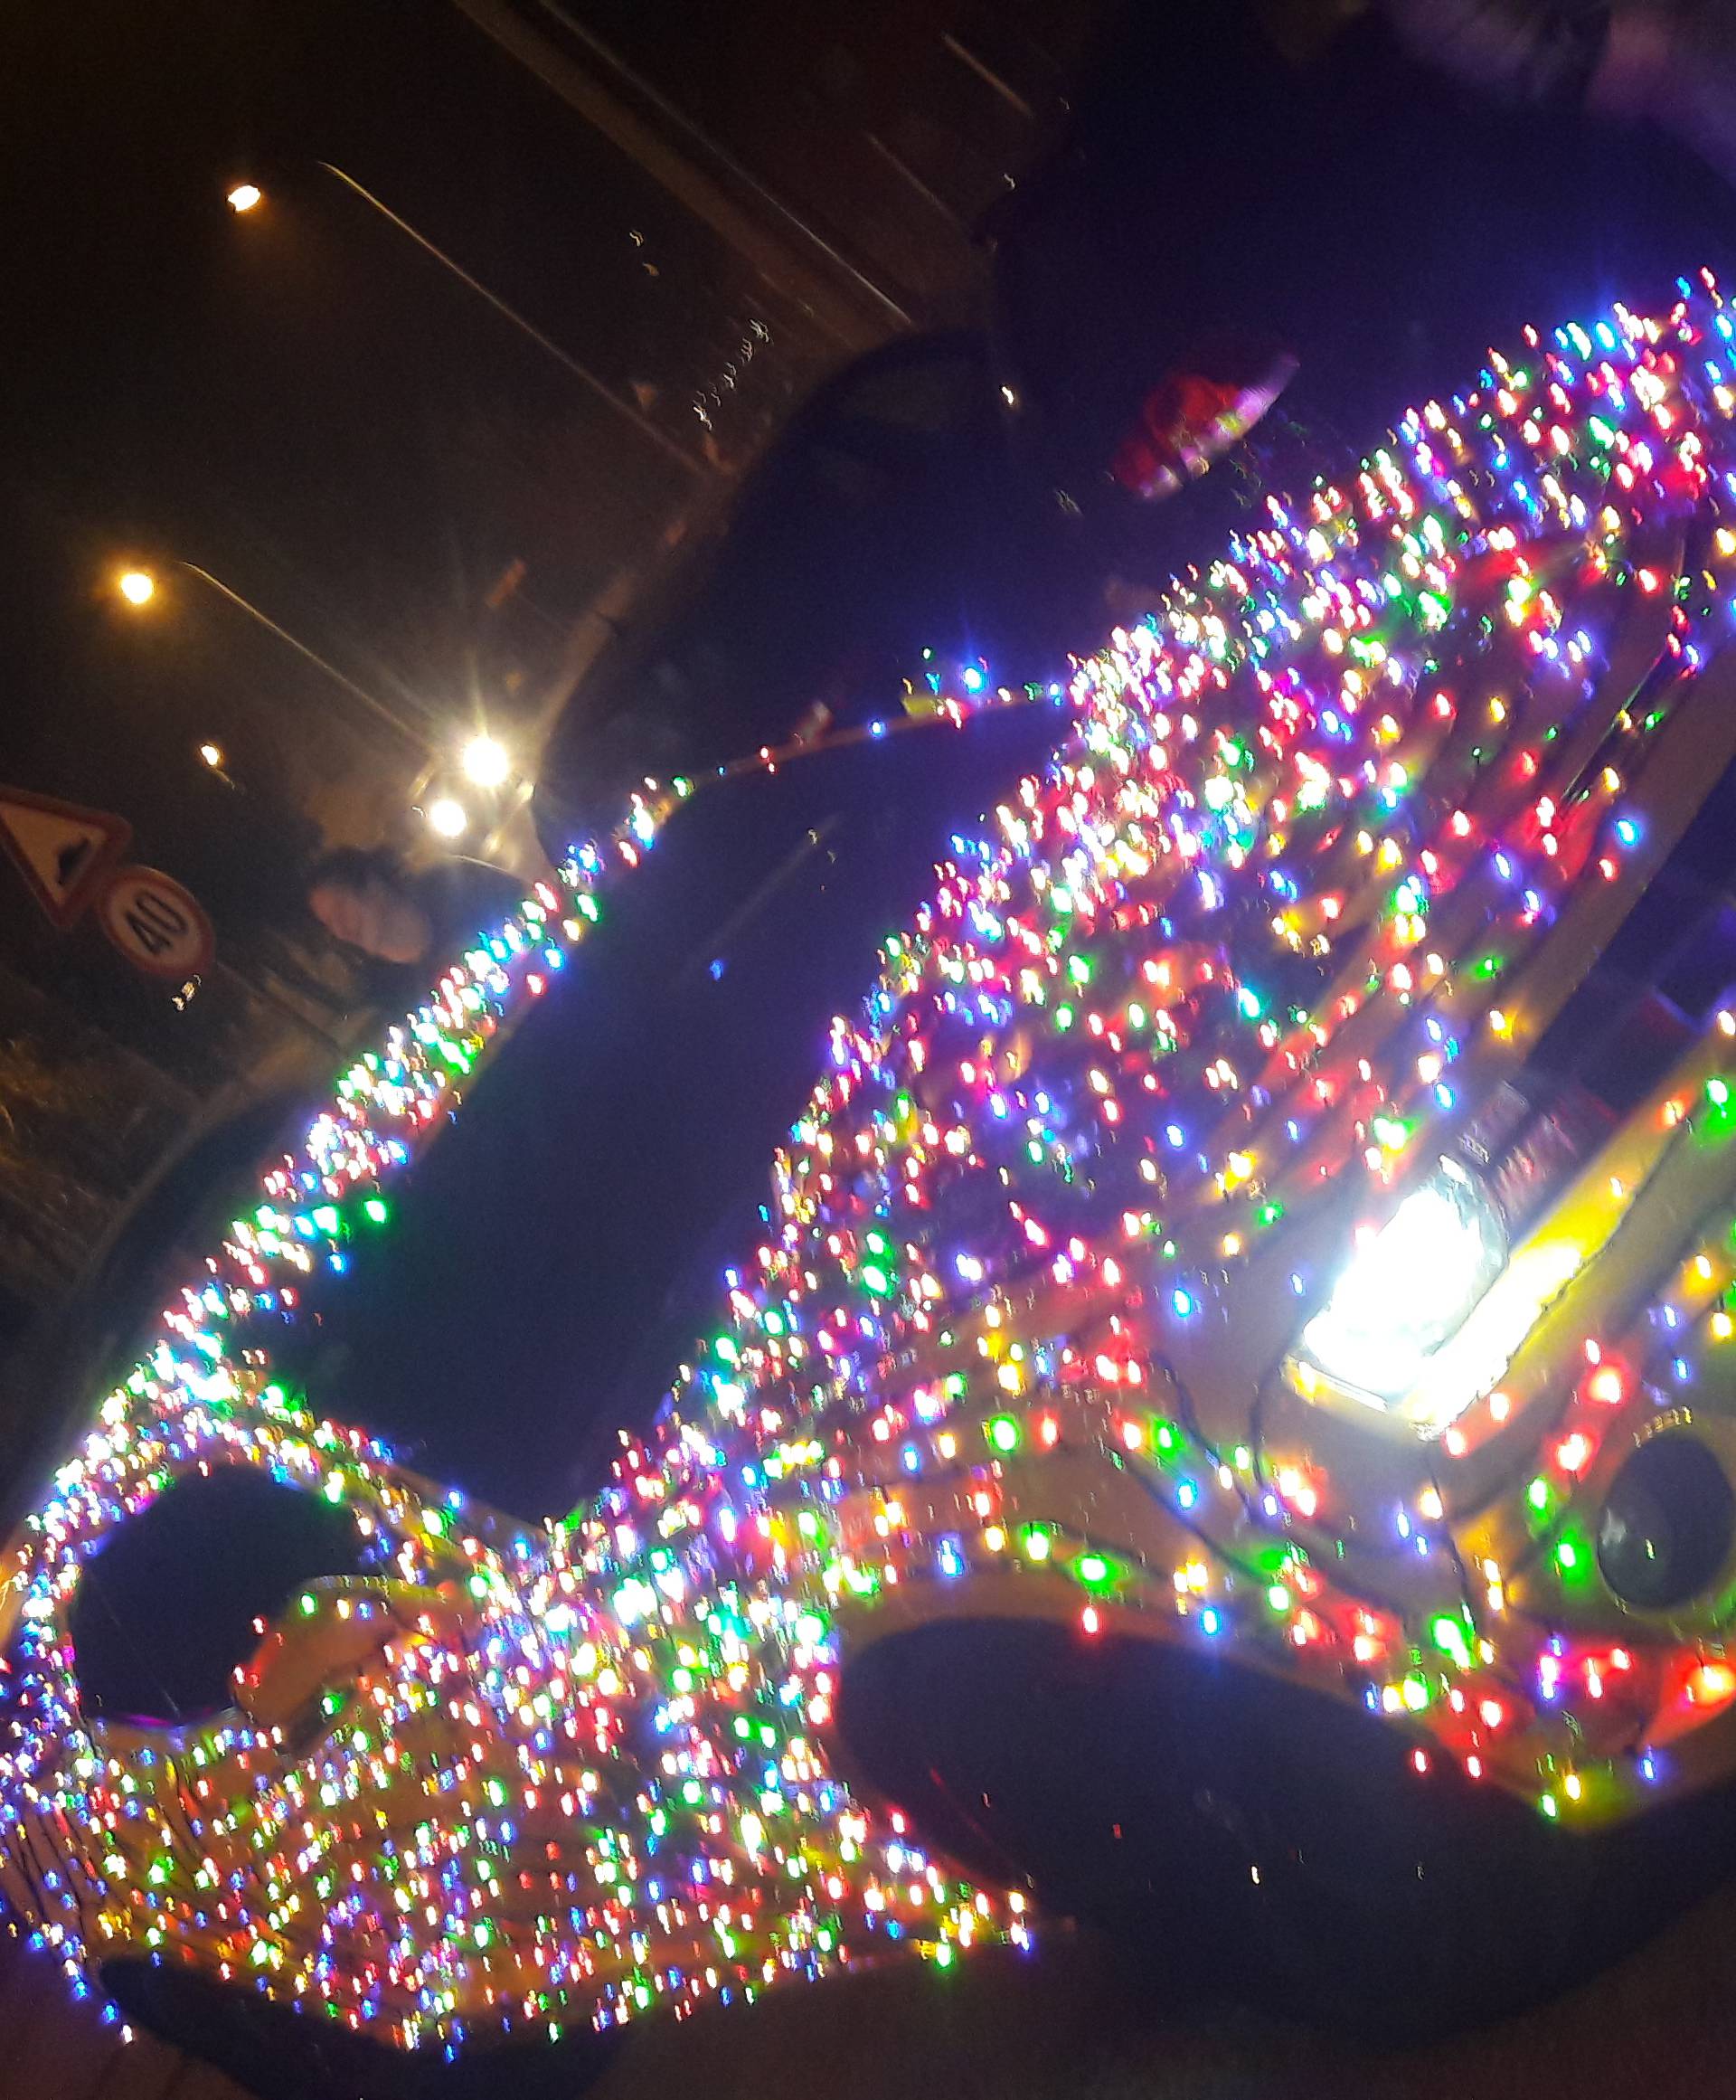 Majstori iz Dubrave prijatelju su ukrasili auto s 4500 lampica